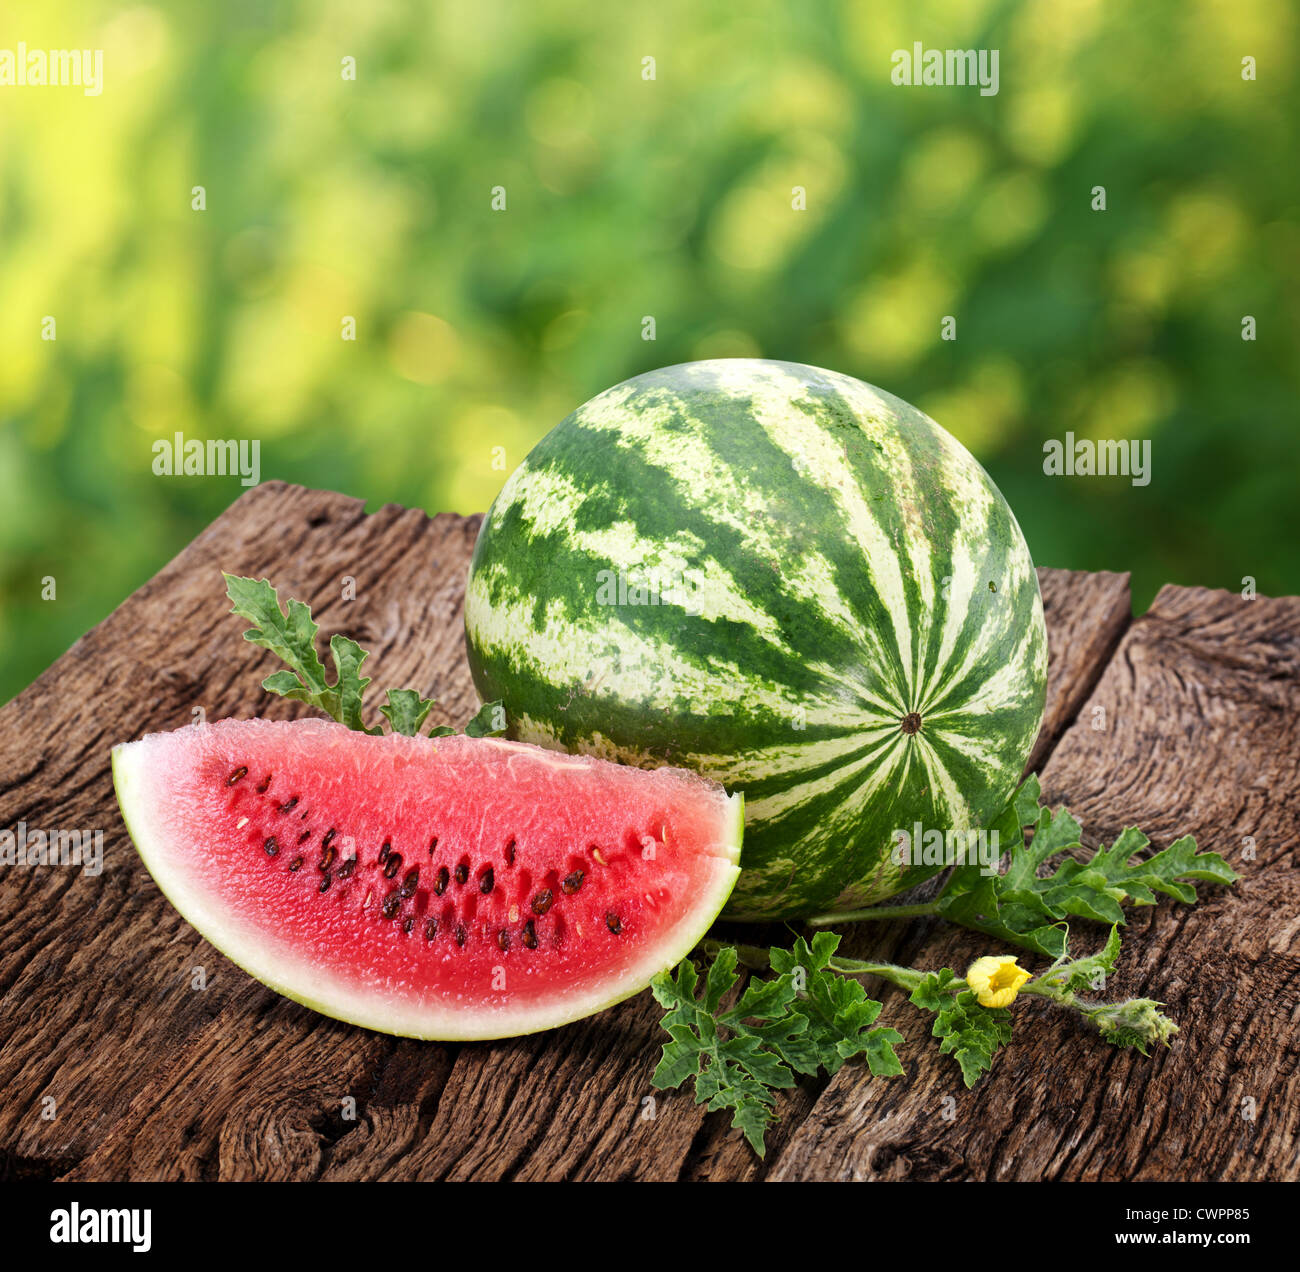 Wassermelone mit einer Scheibe und Blätter auf einem Holztisch. Hintergrund - Unschärfe der Natur. Stockfoto